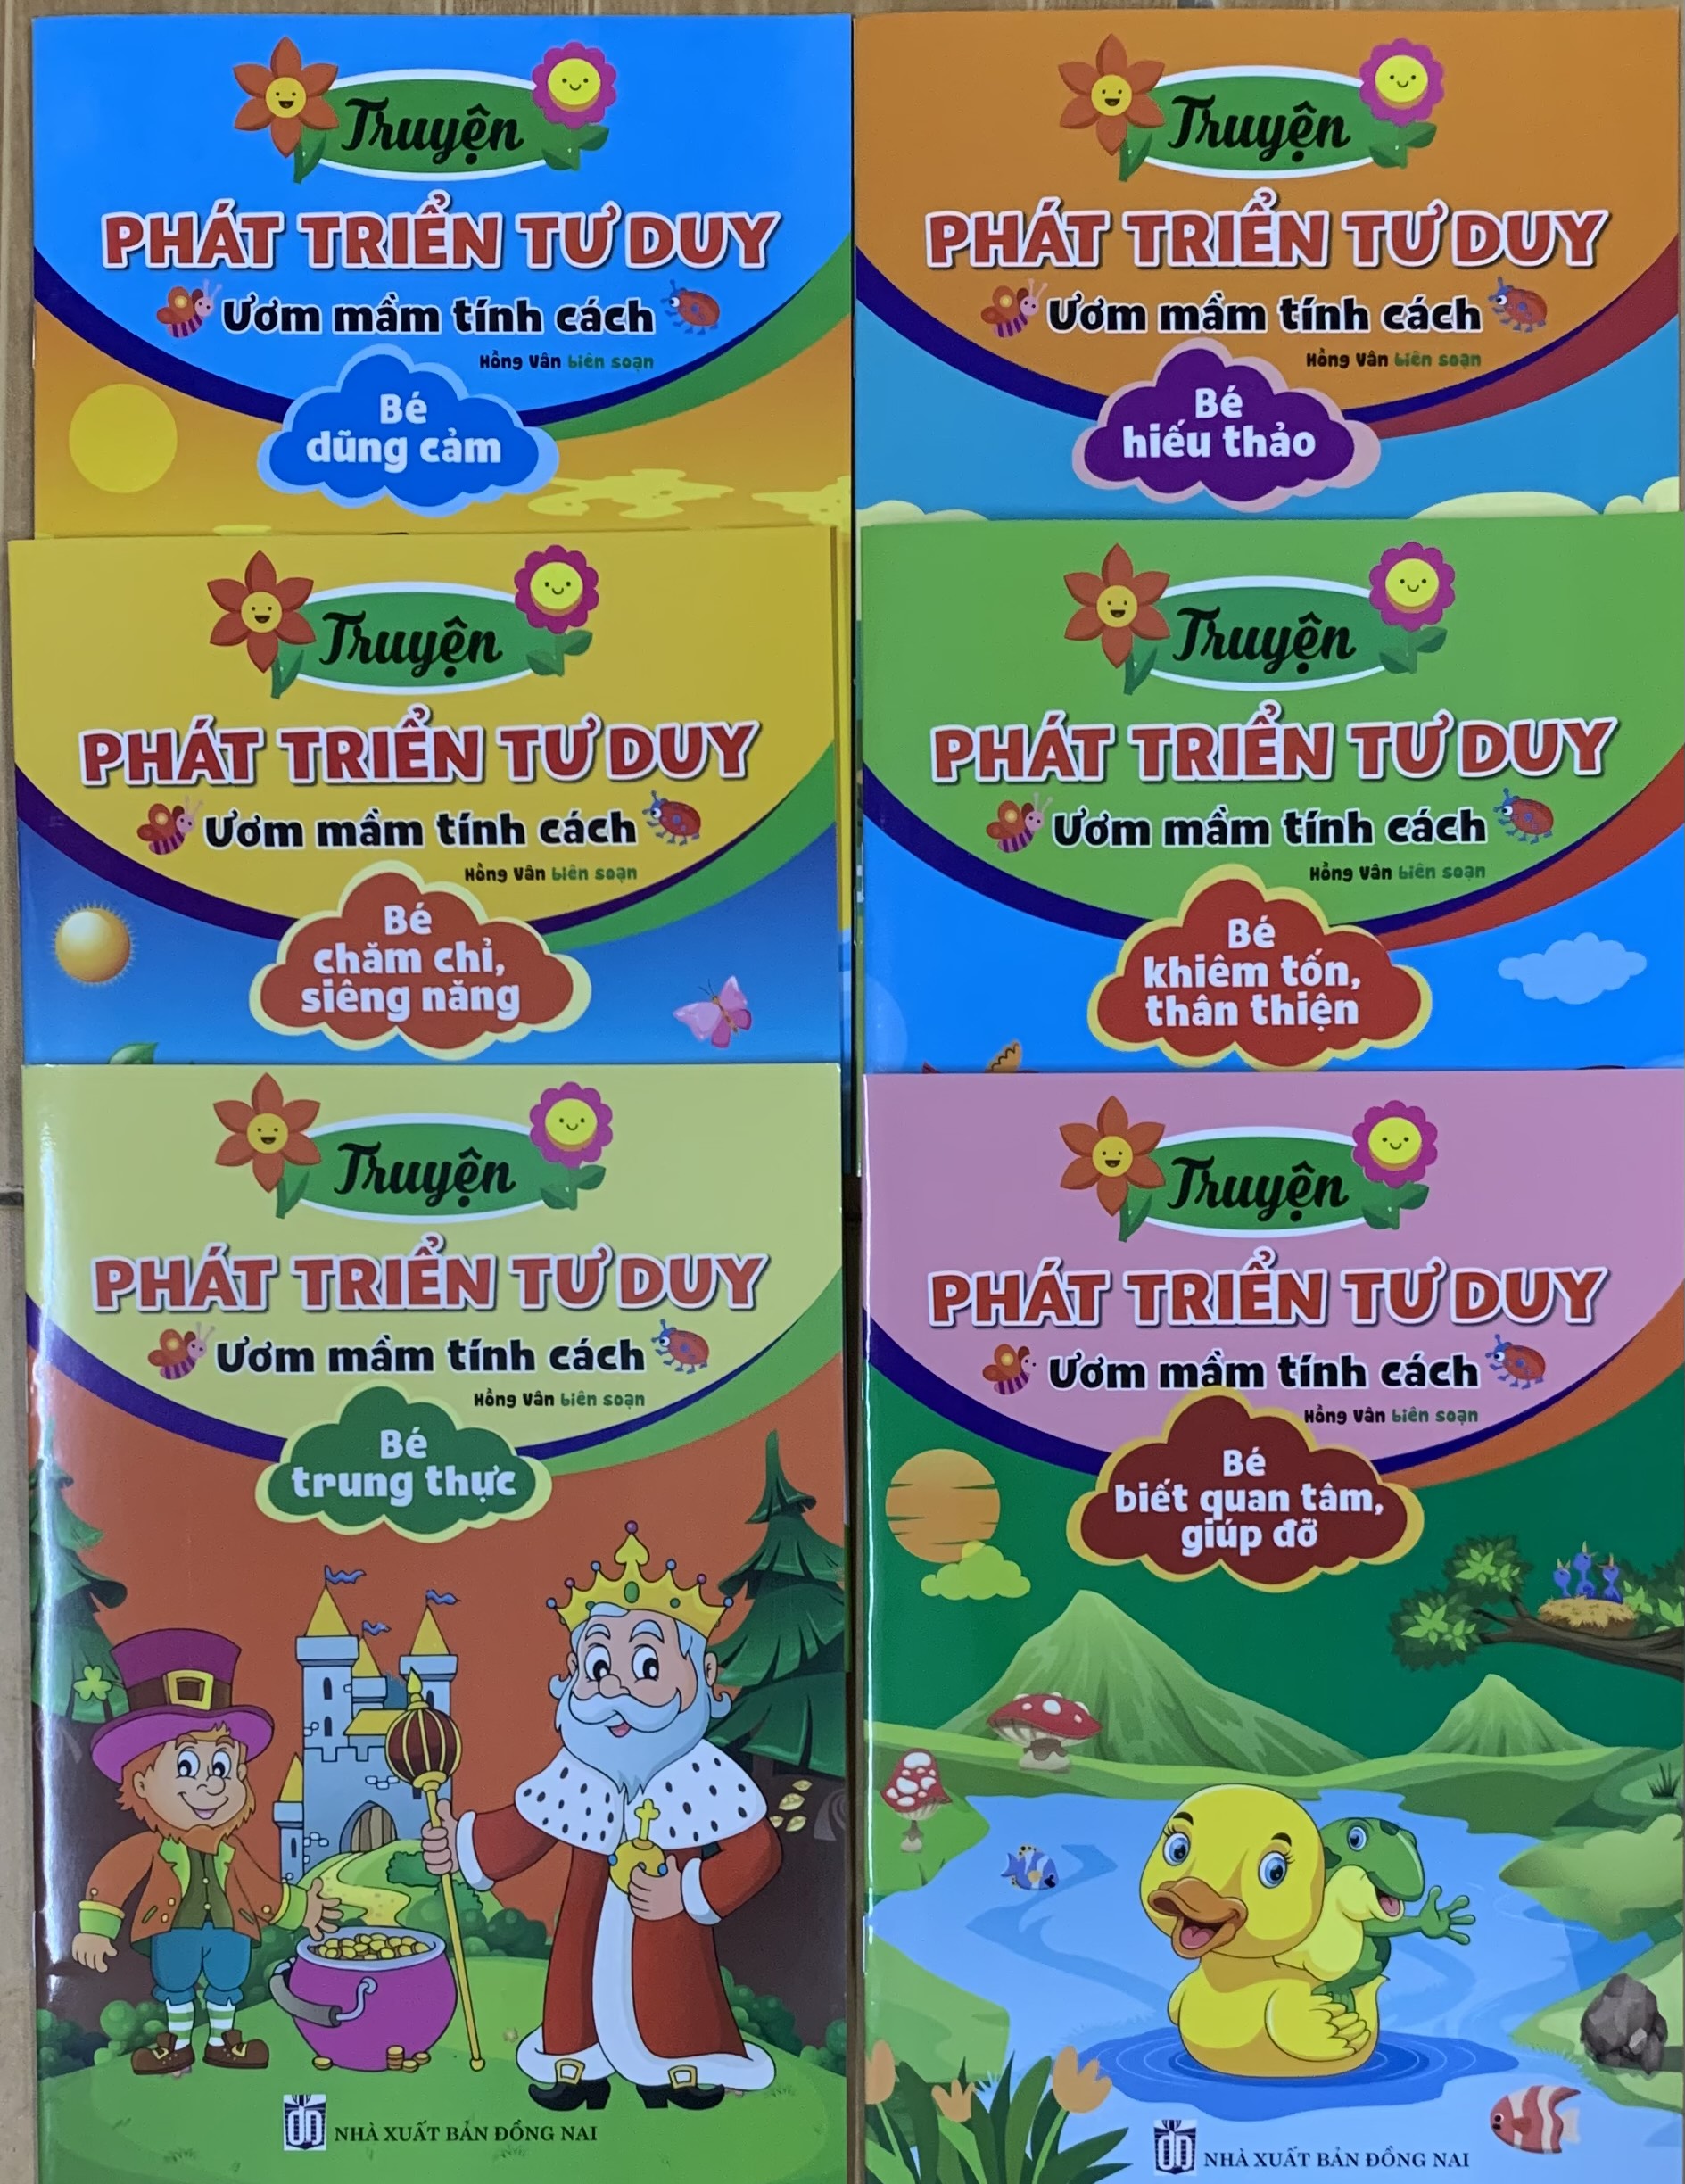 Truyện phát triển tư duy ươm mầm tính cách - Bộ 6 cuốn (Dành cho trẻ từ 3 - 6 tuổi)